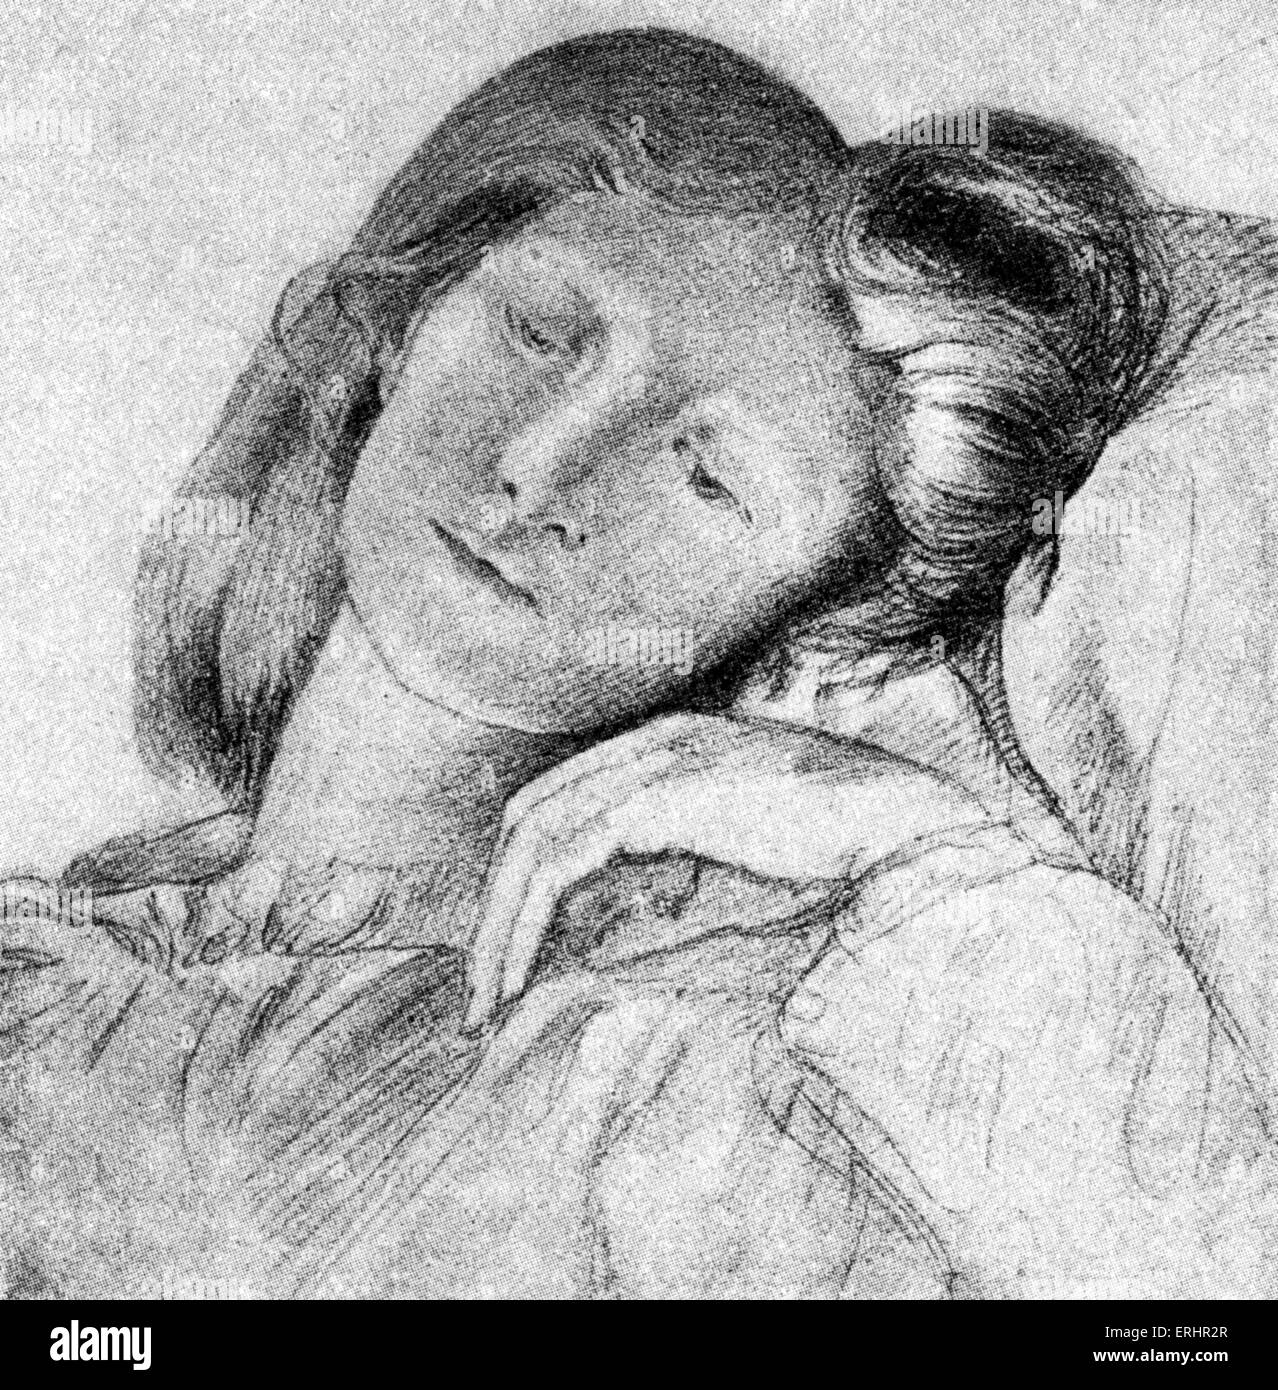 Elizabeth Siddal - épouse de Rossetti. Modèle de l'artiste britannique, poète et artiste : 25 juillet 1829 - 11 février 1862. D'après un dessin de Dante Gabriel Rossetti. Banque D'Images